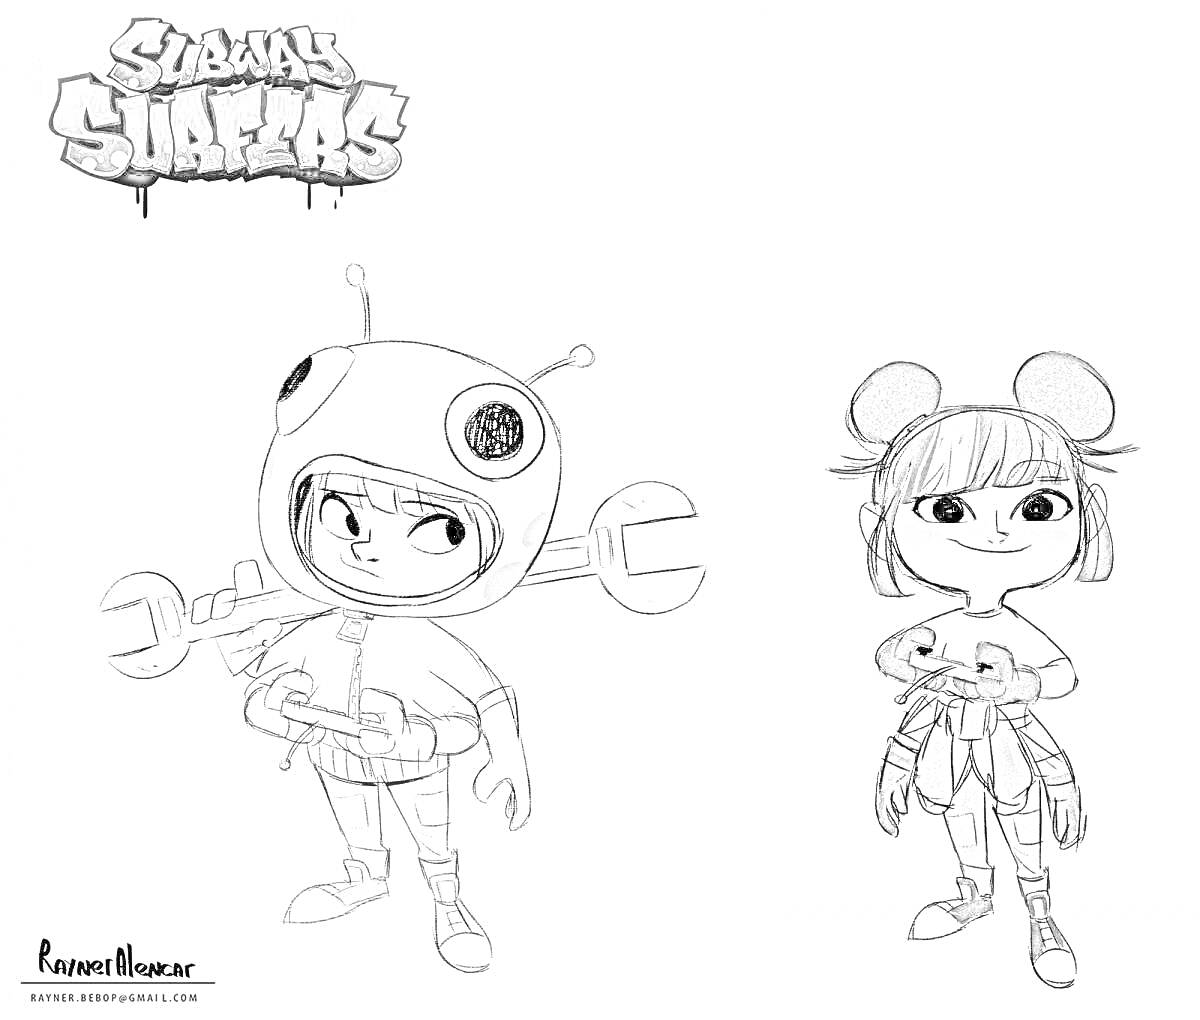 Раскраска Двое персонажей из Сабвей Серф: один в костюме с антеннами и гаечными ключами, другой с ушками и плюшевыми игрушками